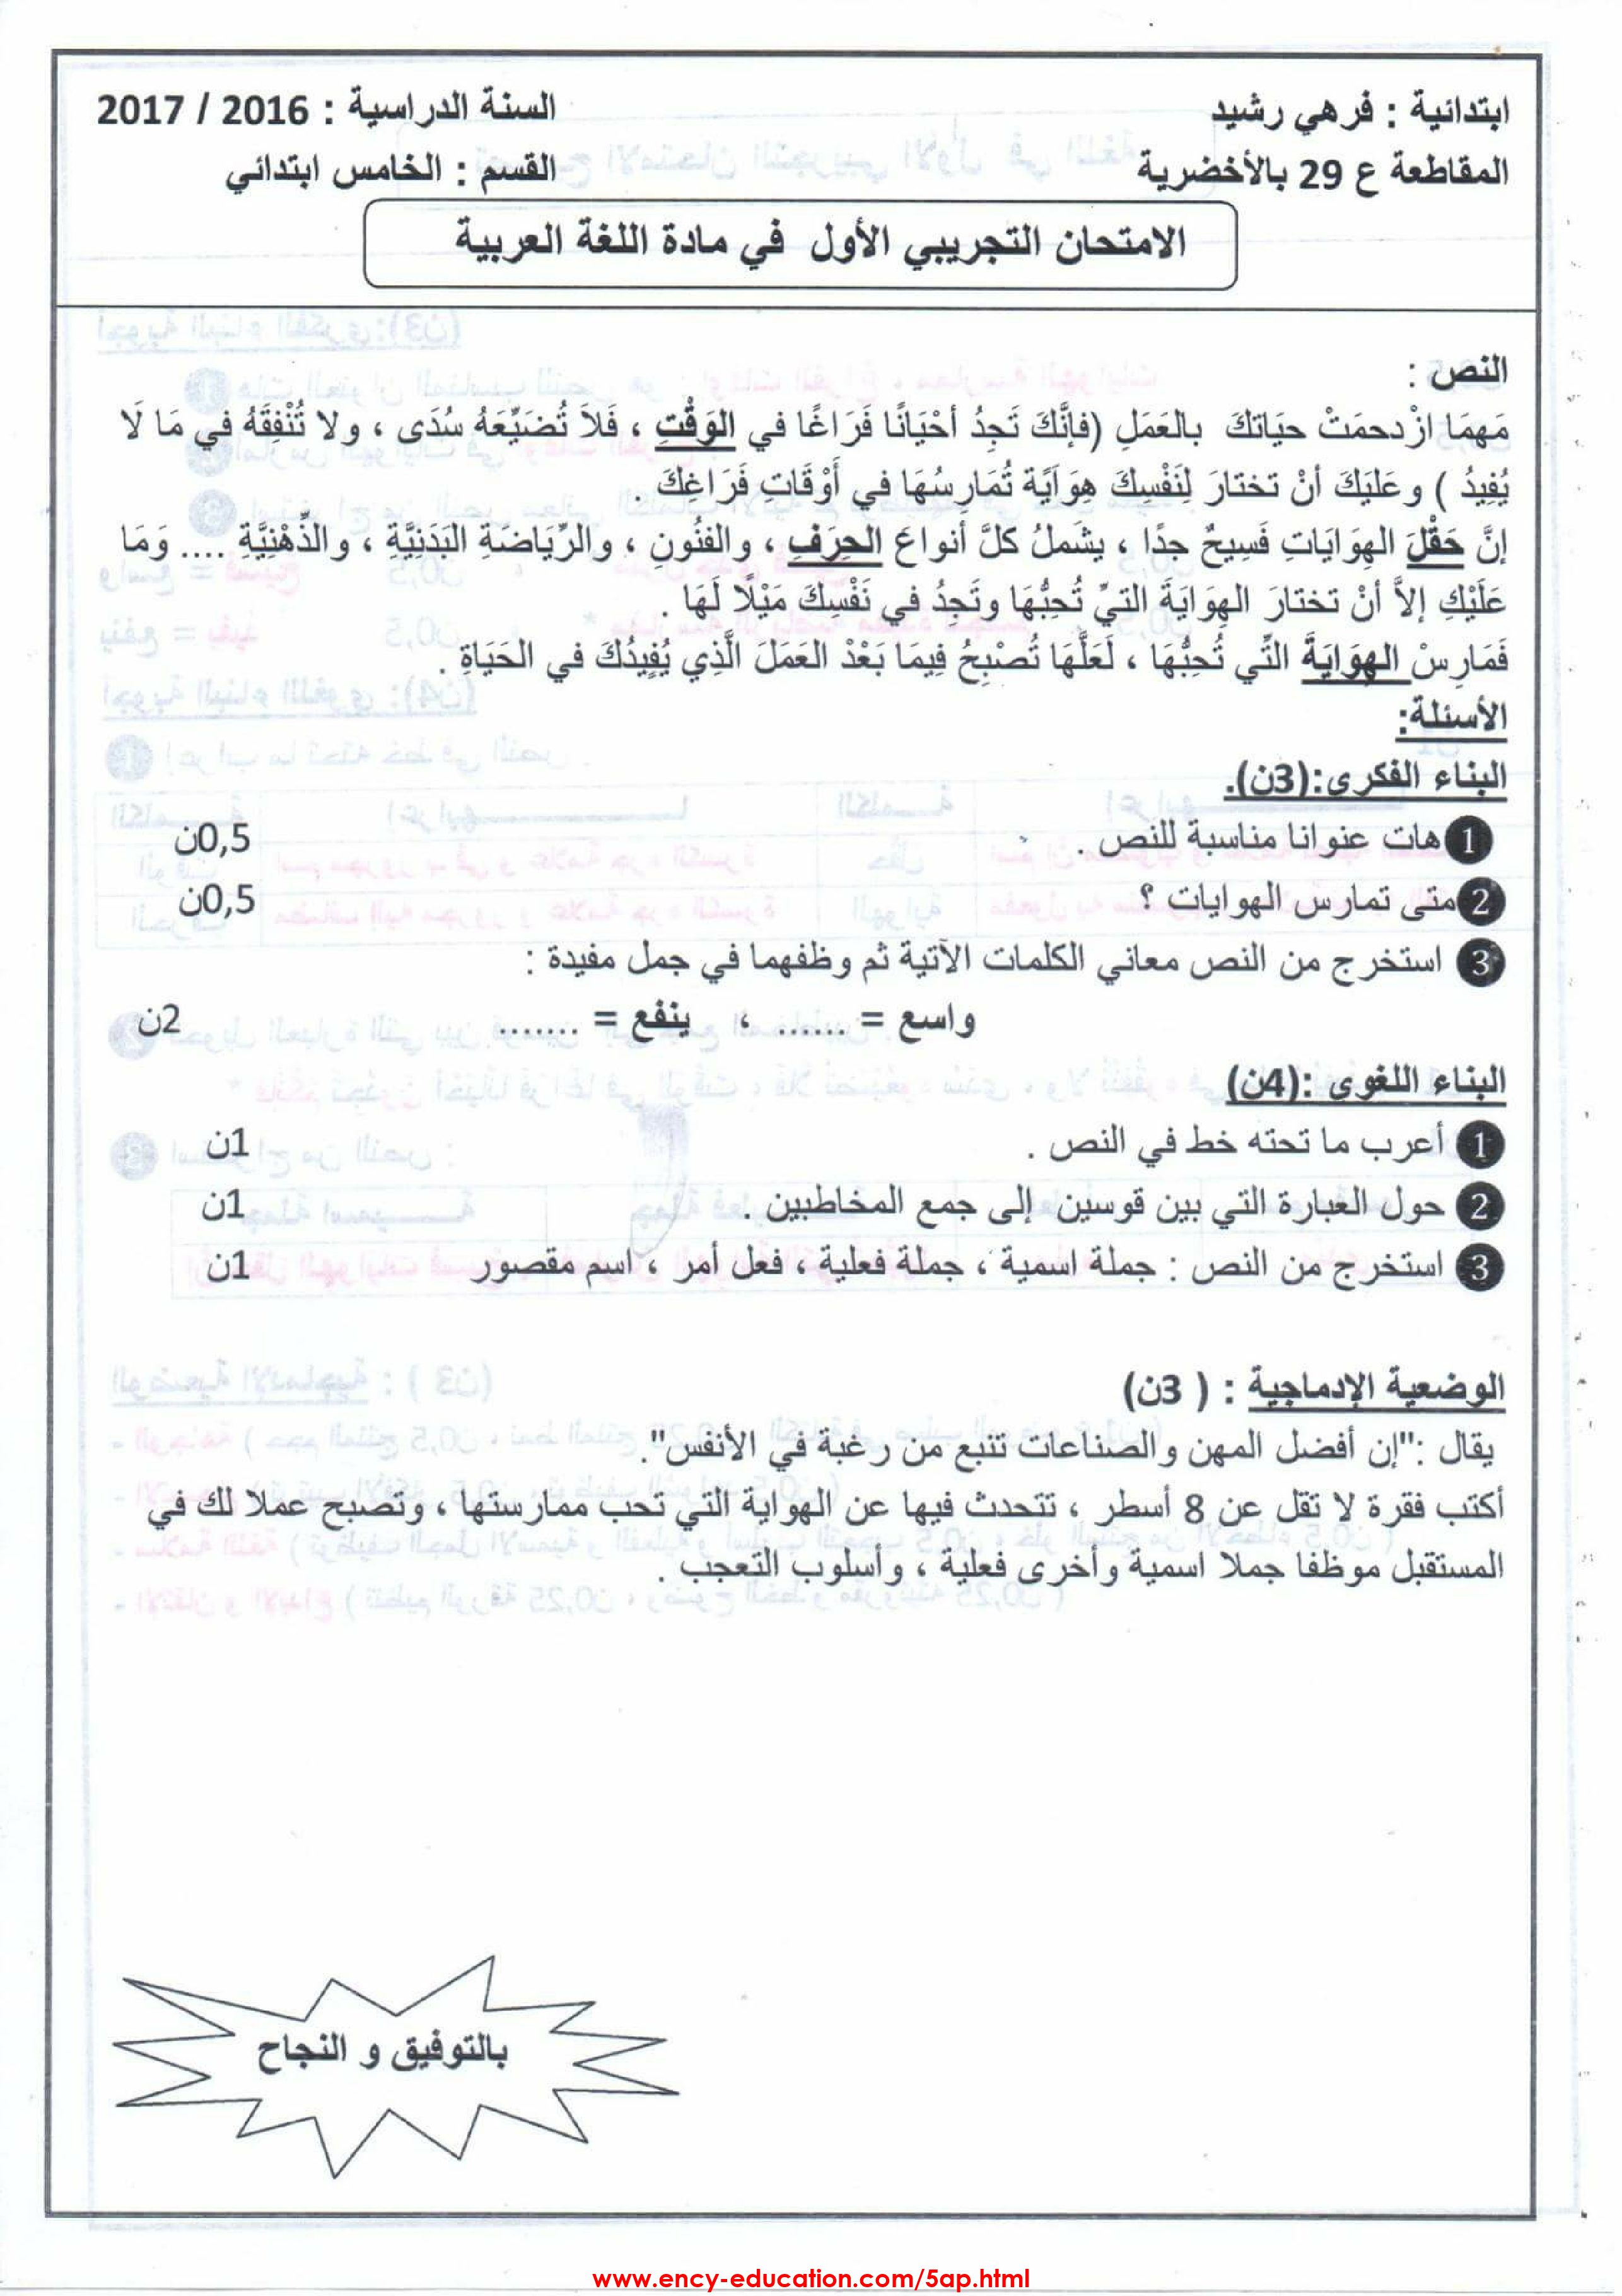 نموذج اختبار اللغة العربية 5 ابتدائي الفصل 3 نص حول تضيع الوقت